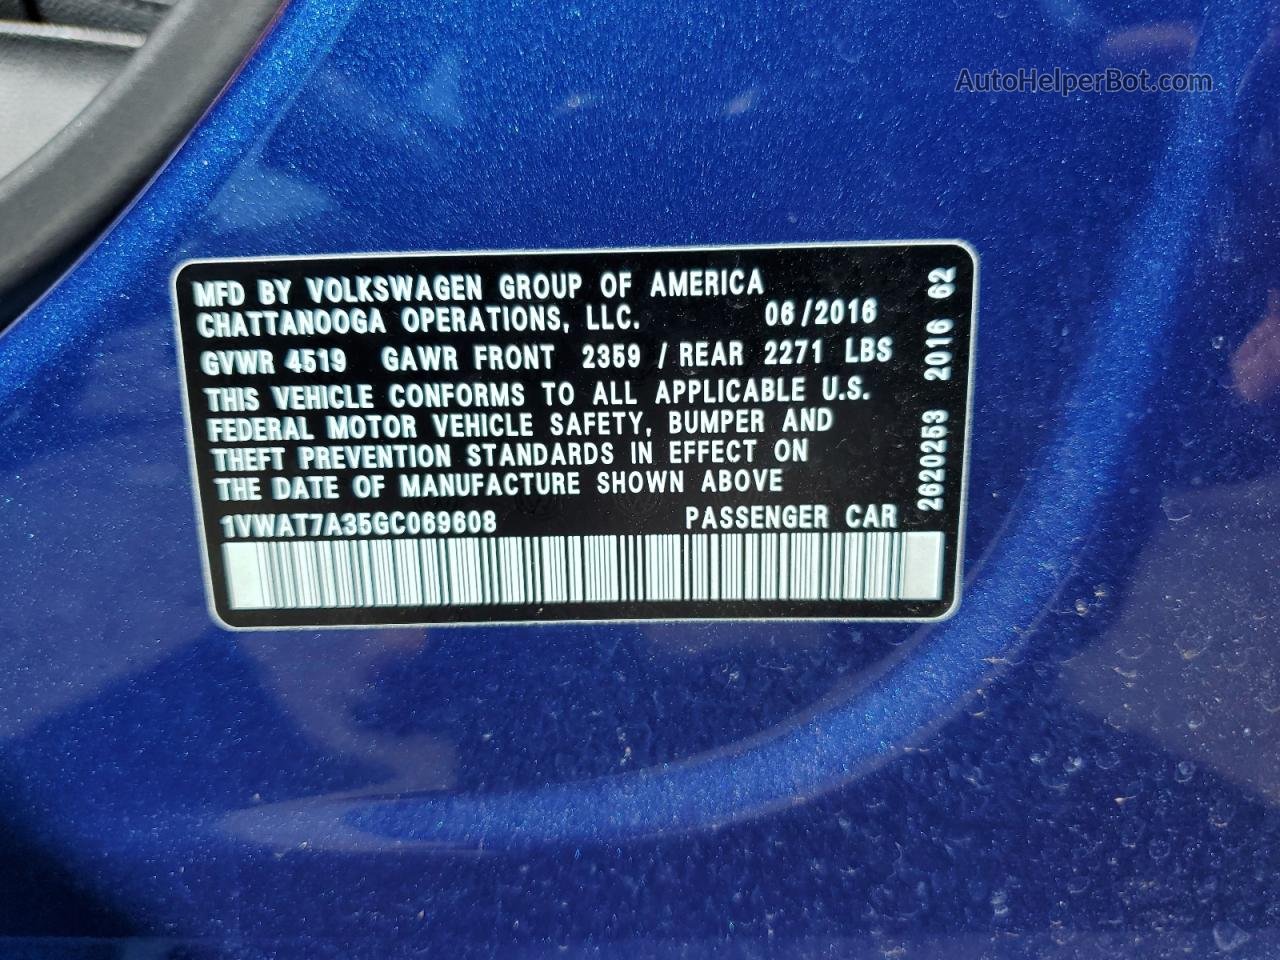 2016 Volkswagen Passat S Синий vin: 1VWAT7A35GC069608